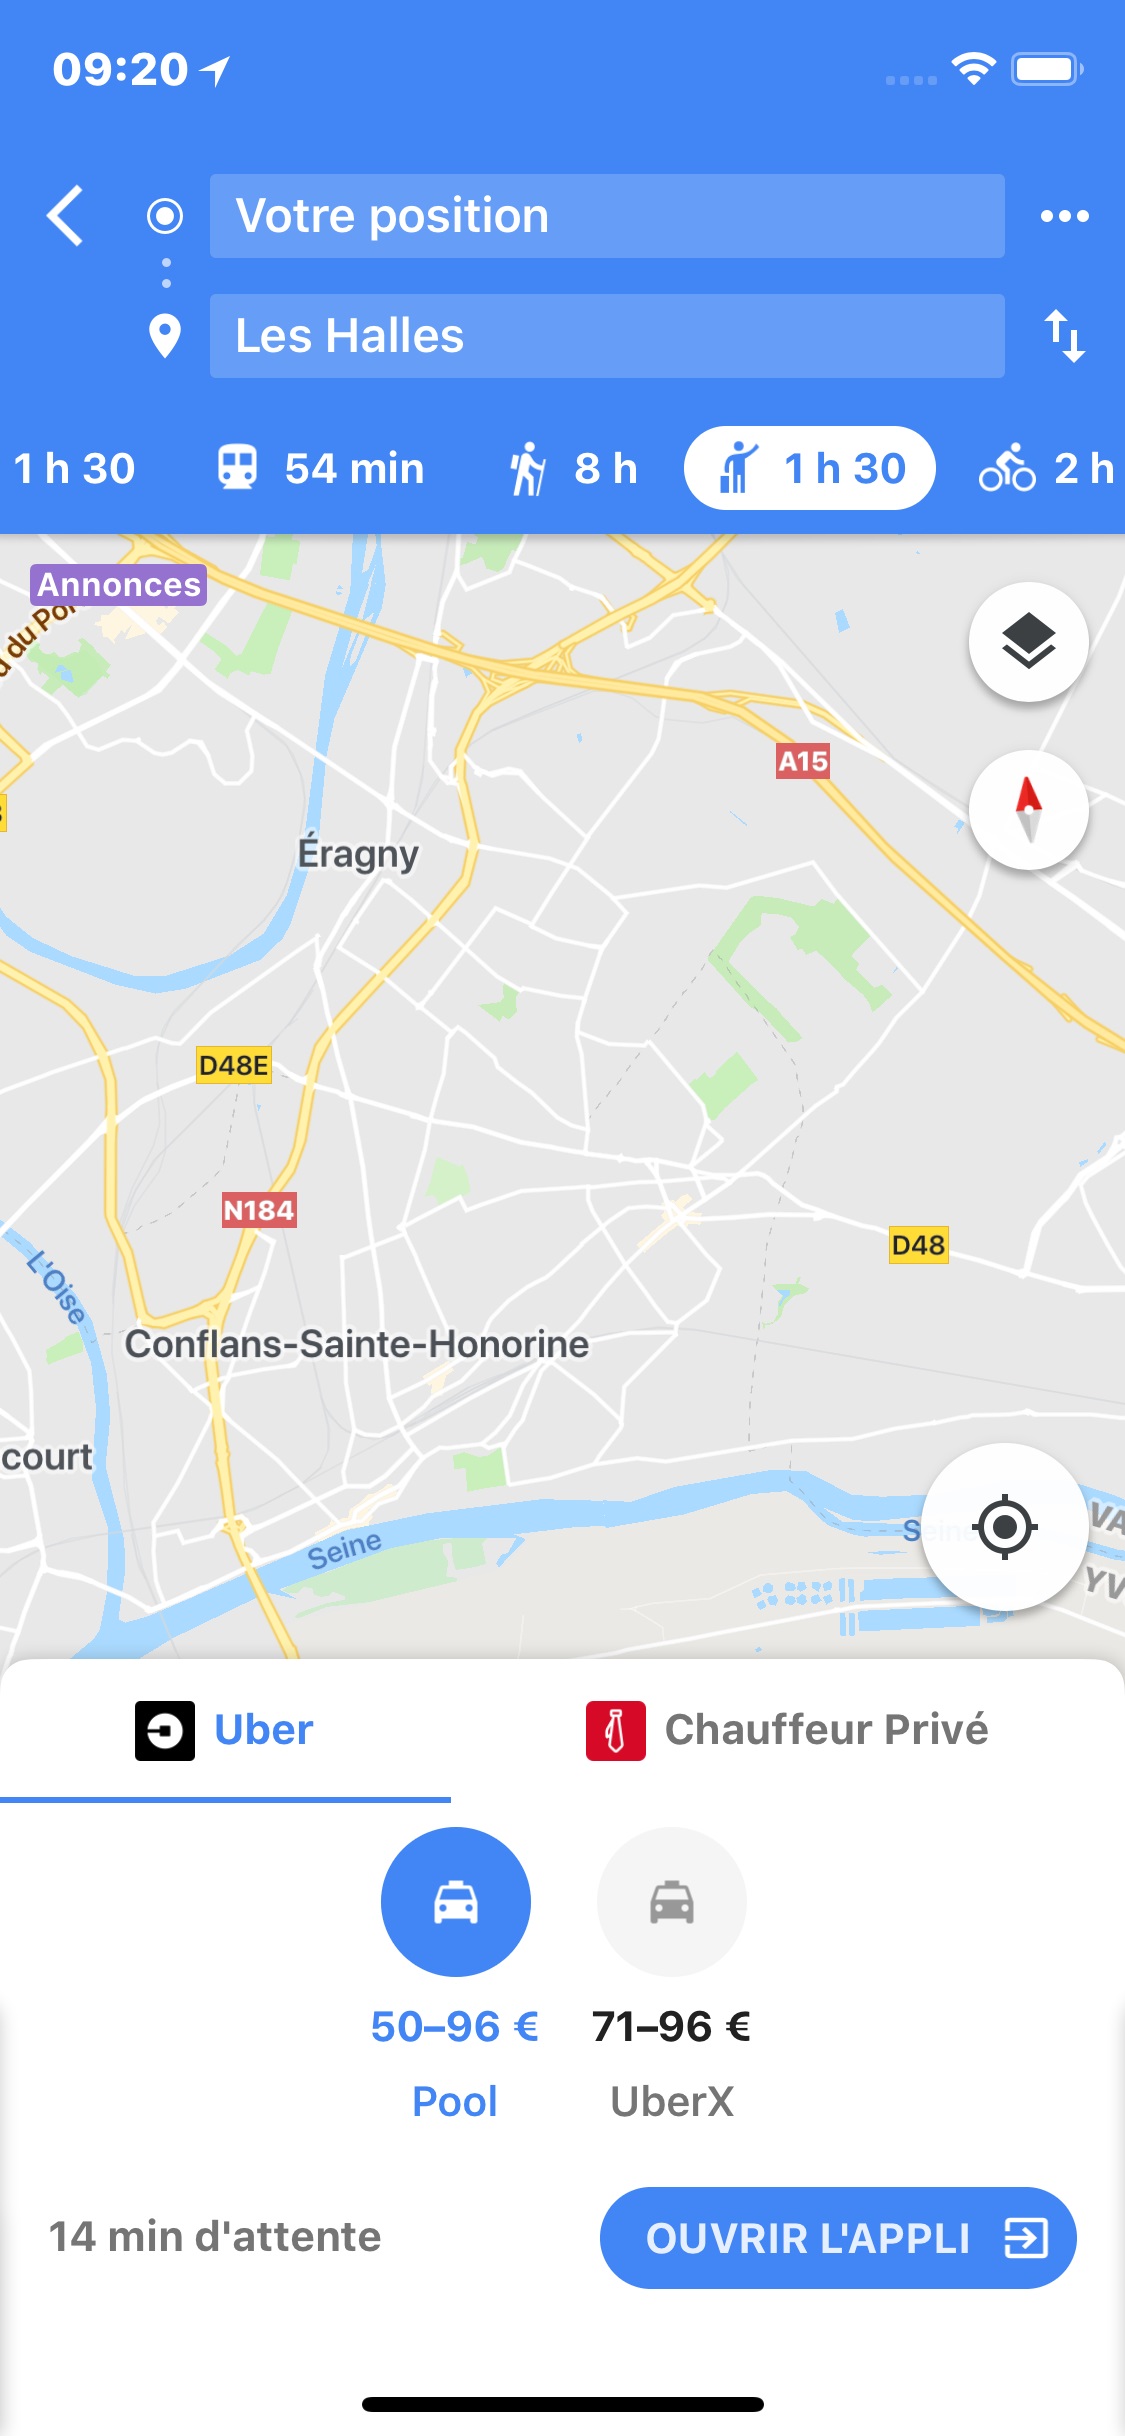 Google Maps iOS Uber + Chauffeur